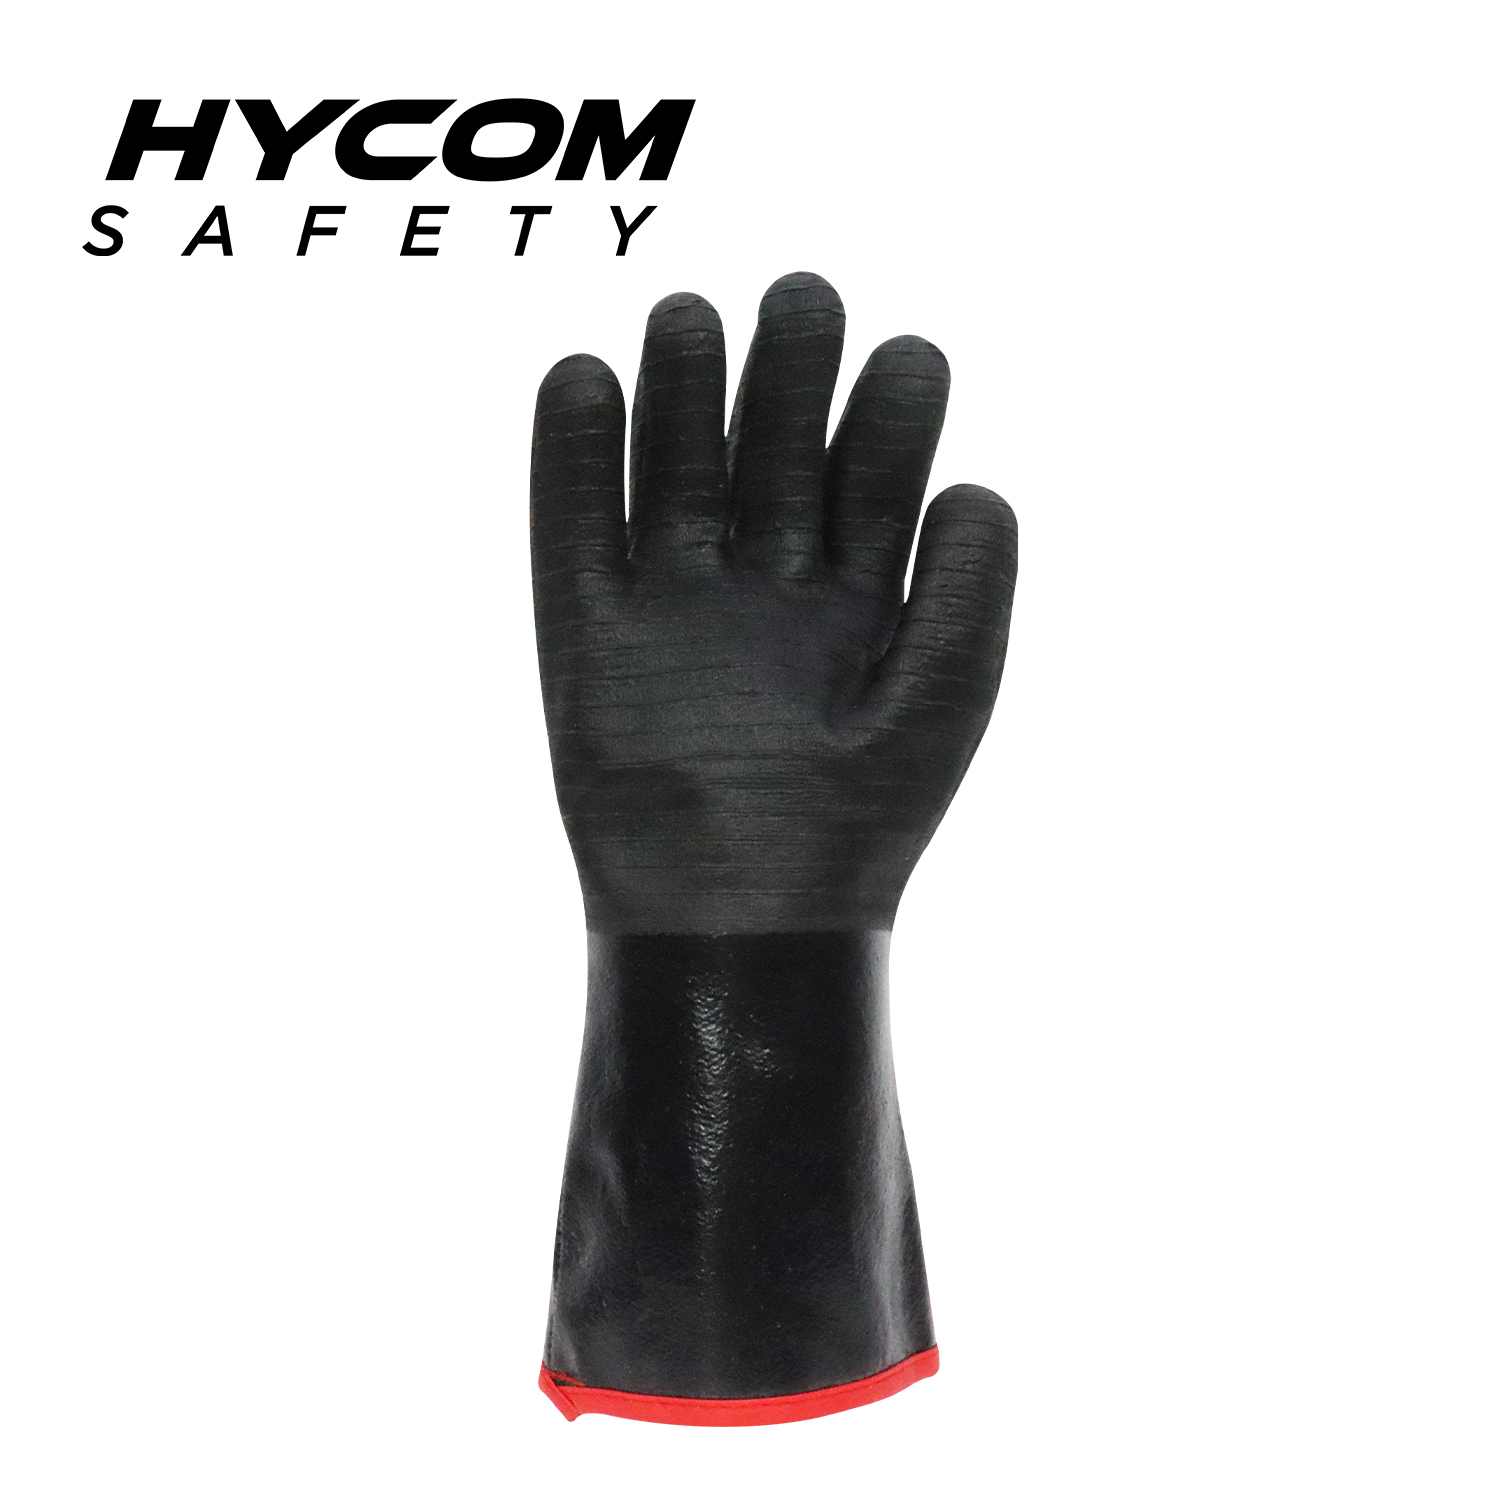 HYCOM Wasserfester, ölbeständiger Super Grip-Grillhandschuh mit lebensmittelechten Schutzhandschuhen mit einer Kontakttemperatur von 450 °C/840 °F